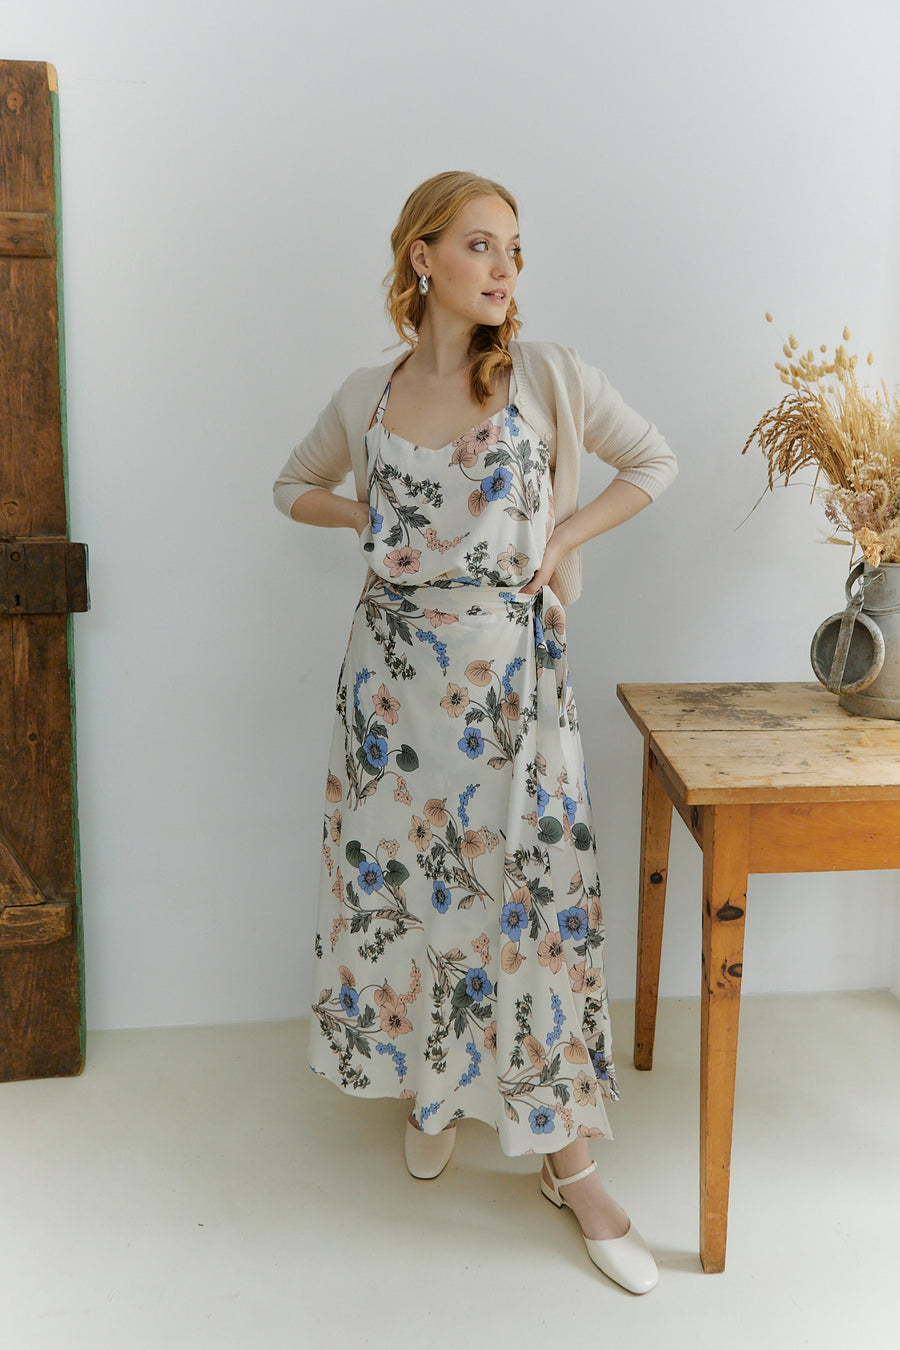 Meij-Nina Wrap Skirt (flowery-beige), midi length skirt